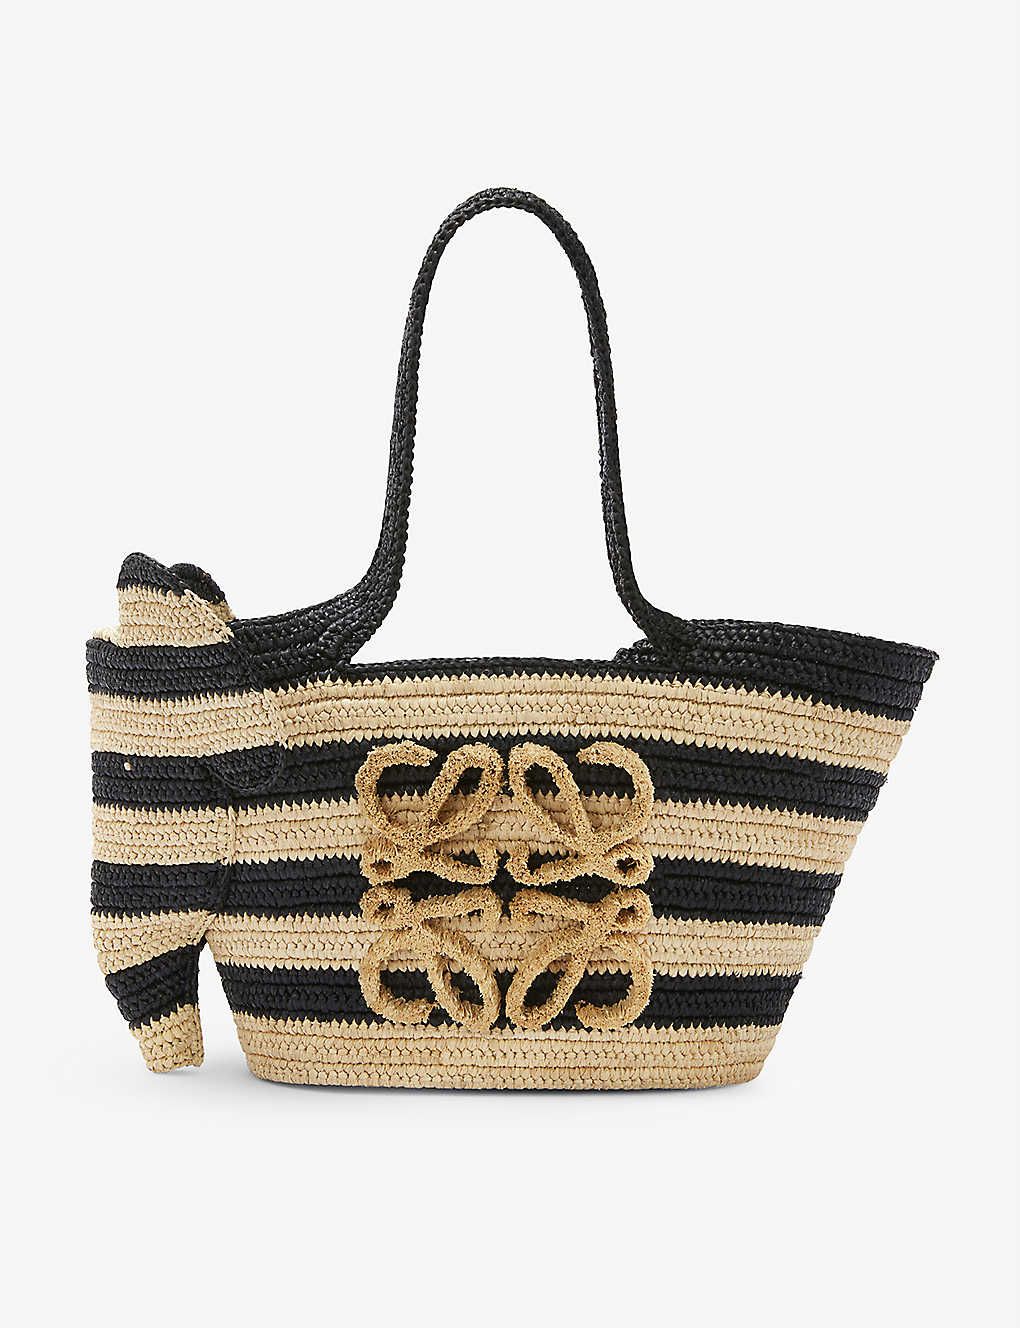 LOEWE Loewe Paula’s Ibiza Elephant raffia basket bag | Selfridges